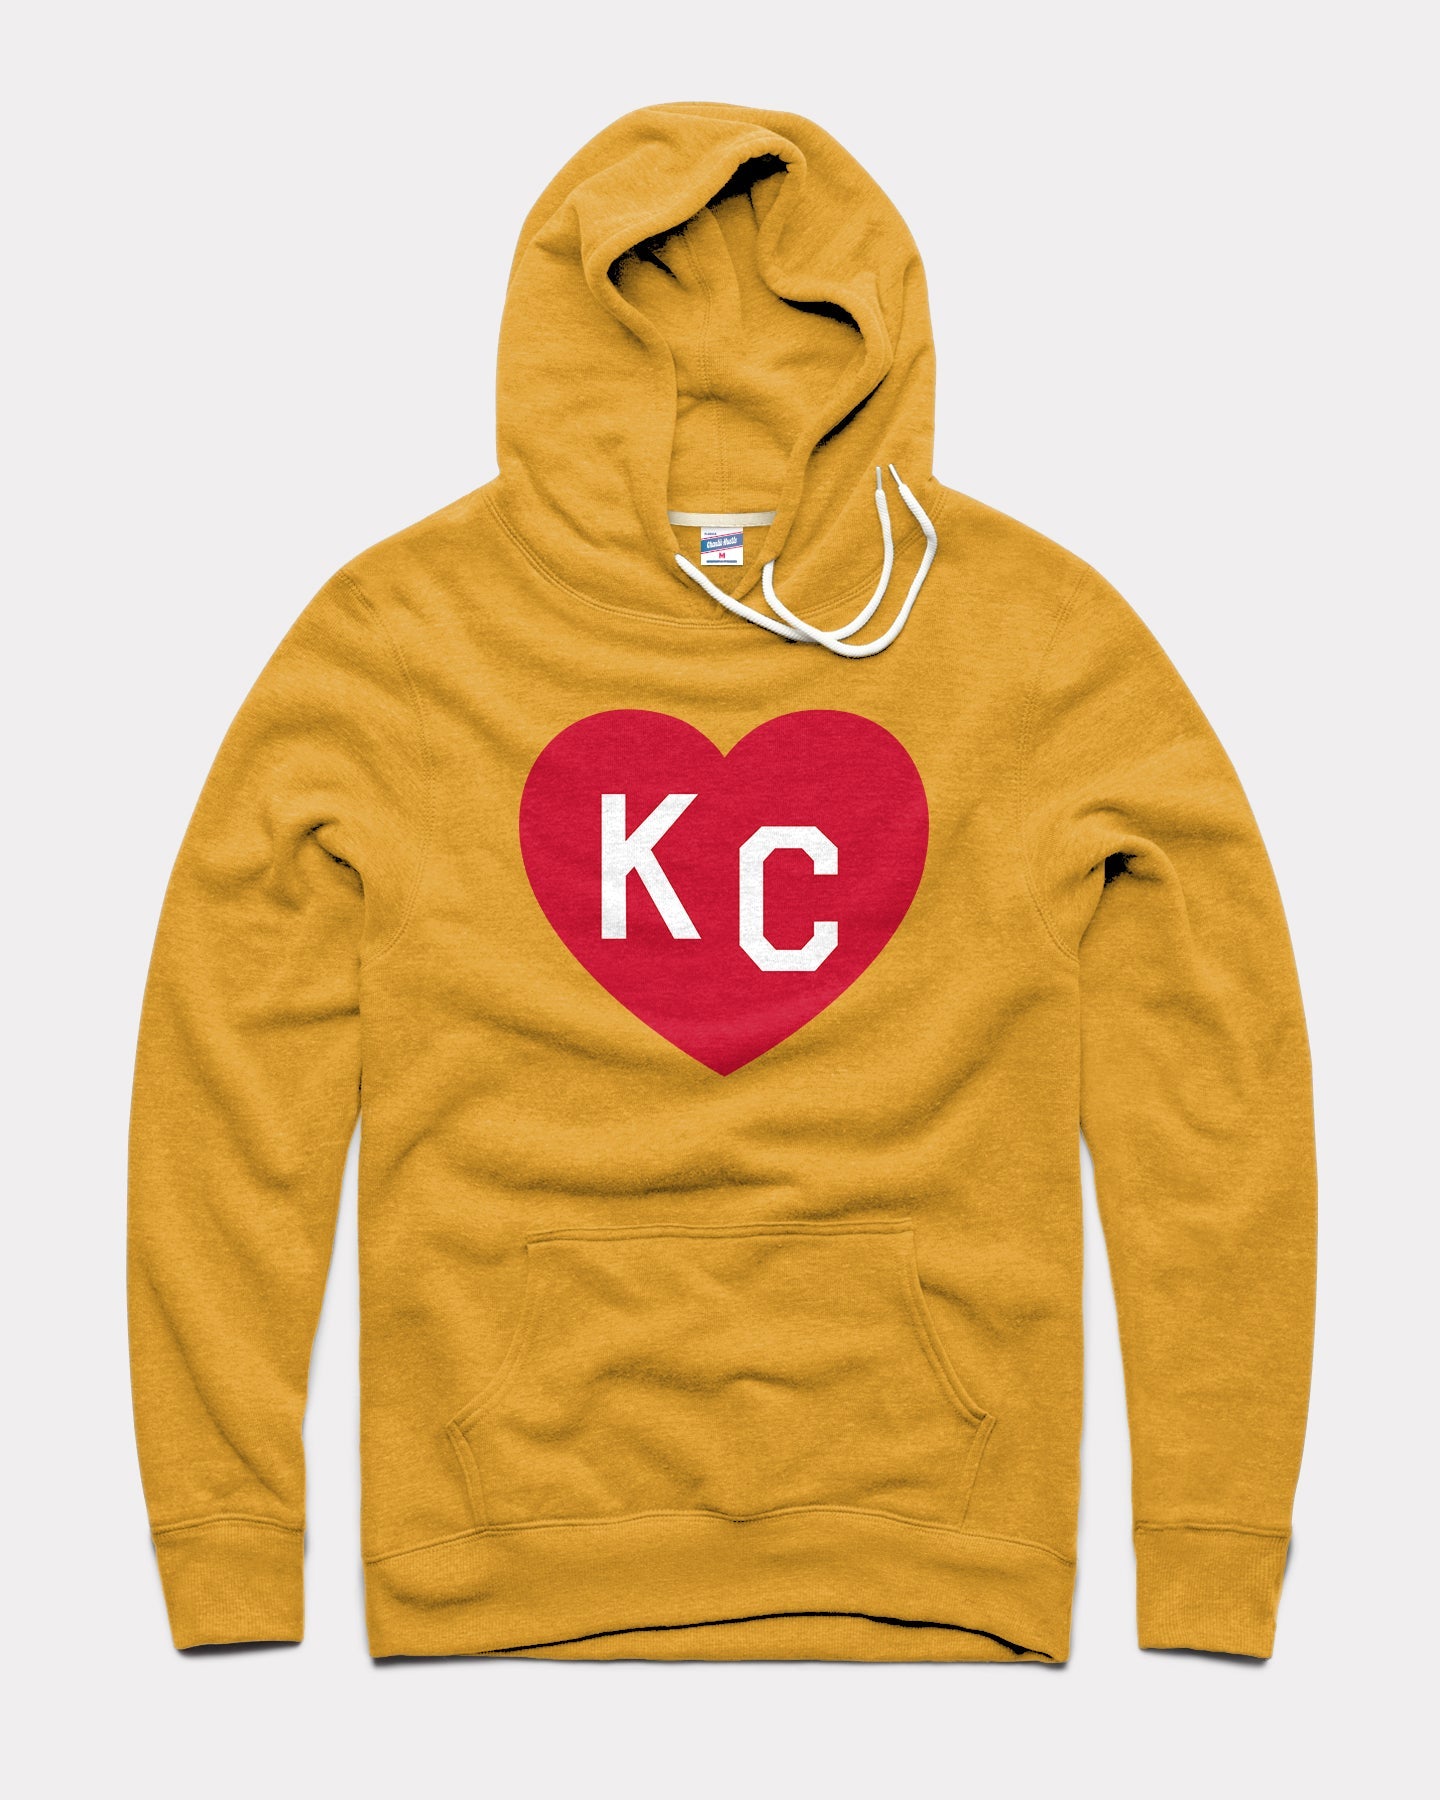 Gold & Red KC Heart Vintage Hoodie Sweatshirt | Charlie Hustle 18 / XL